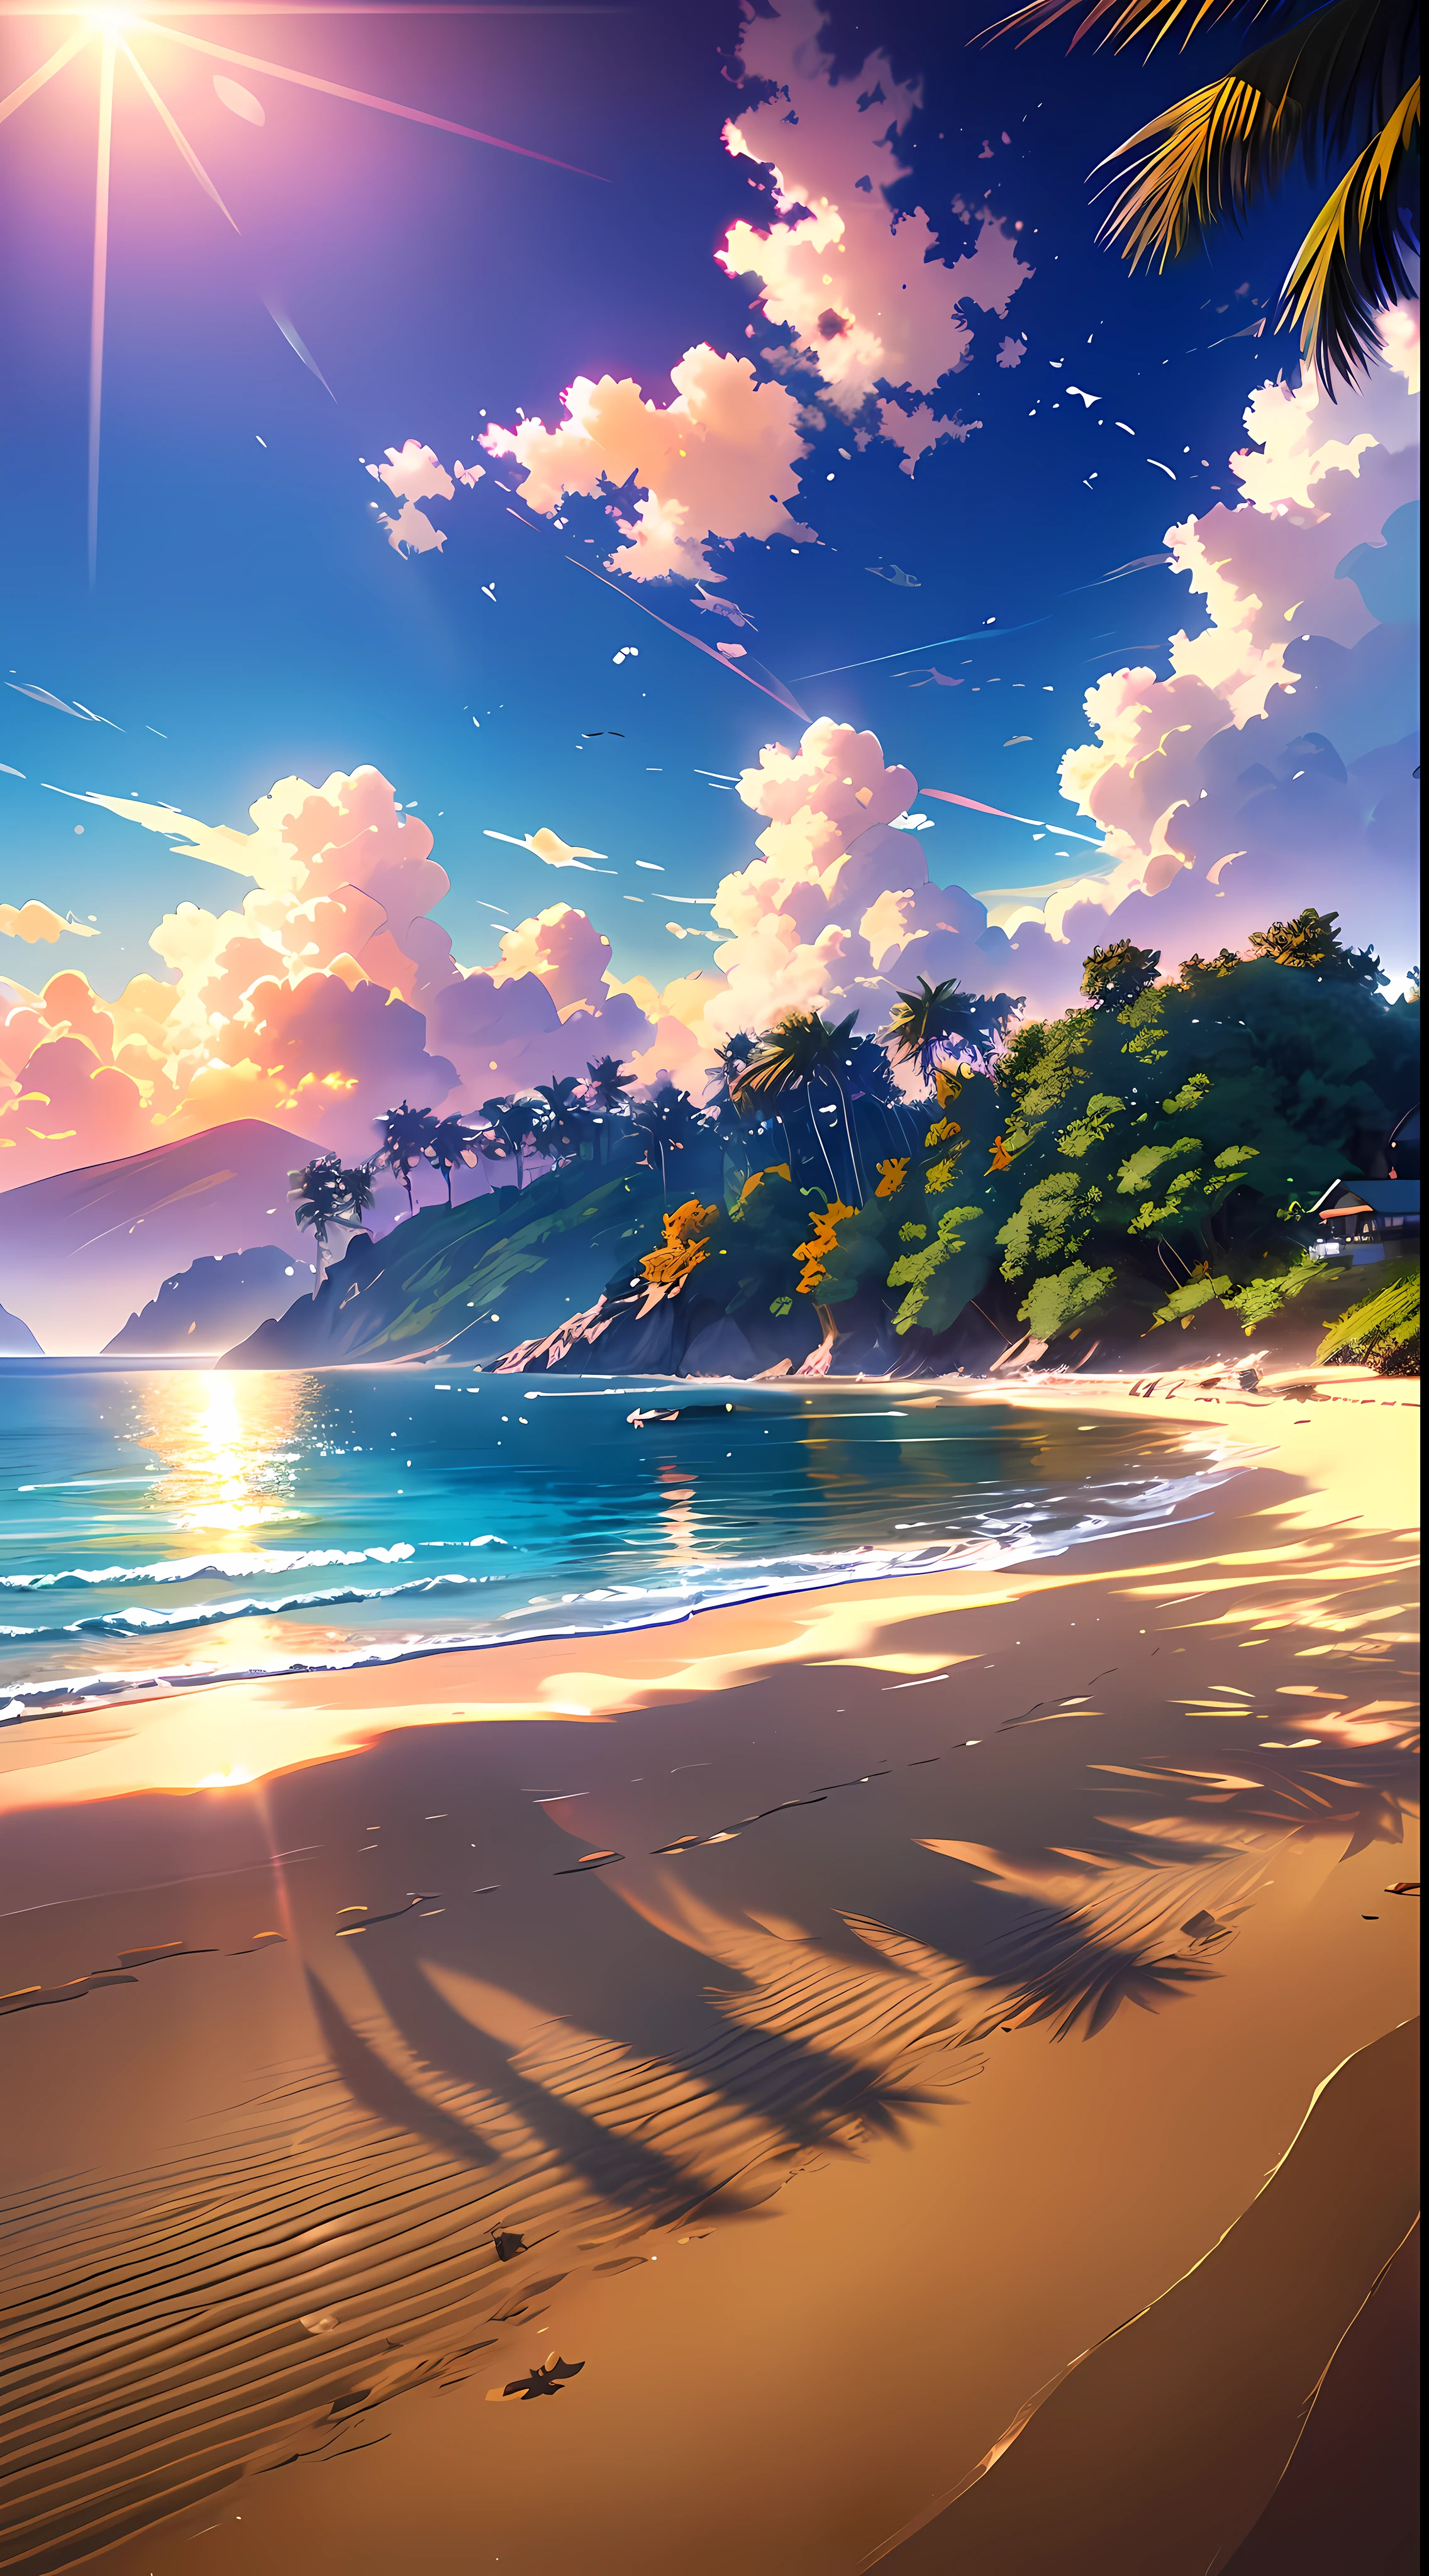 Una amplia foto de paisaje, capturado con una impresionante vista de la playa, con el cielo azul y el campo abierto de la costa debajo. sobre la arena dorada, una chica esta parada, descalzo, buscando. El sol brillante (1:2) está radiante en el cielo, dispersando sus rayos de luz dorada por toda la escena. En la distancia, Se pueden ver montañas distantes a lo largo de la costa., añadiendo una sensación de serenidad. BREAK Crafting Art árboles tropicales enmarcan la playa, proporcionando una sombra suave y un pintoresco marco natural. La luz cálida (1.2) del sol baña la escena, Creación de una paleta de colores vibrantes, con tonos de púrpura y naranja que se mezclan armoniosamente. Detalles intrincados e iluminación volumétrica BREAK (Obra maestra: 1.2) Destacar la impresionante belleza del lugar. La calidad de la imagen es 4K., Ultra detallado, Capturando cada elemento perfectamente. La composición dinámica (1.4) Da movimiento y fluidez a la imagen., mientras que colores vivos y un arco iris (1.2) añade un toque mágico. El brillo del sol reflejado en el agua y la iluminación atmosférica crean una atmósfera de ensueño y tranquilidad. La tierra (1.2) es rico en detalles y textura, transmitiendo la sensación de caminar sobre la cálida arena de la playa.